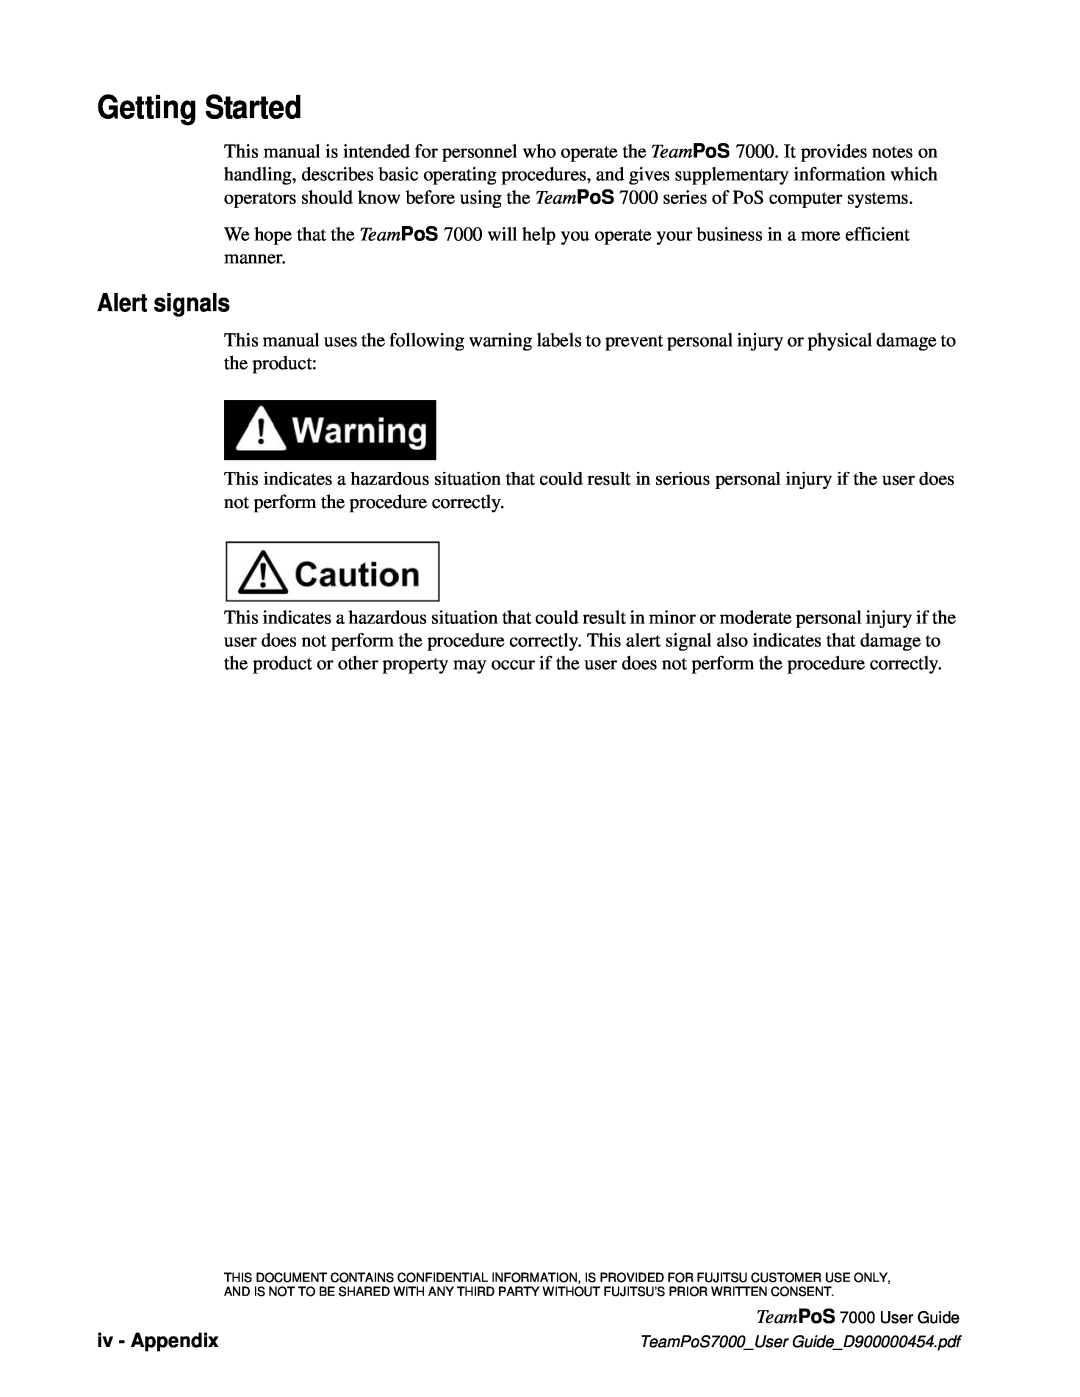 Fujitsu 7000 manual Getting Started, Alert signals, iv - Appendix 